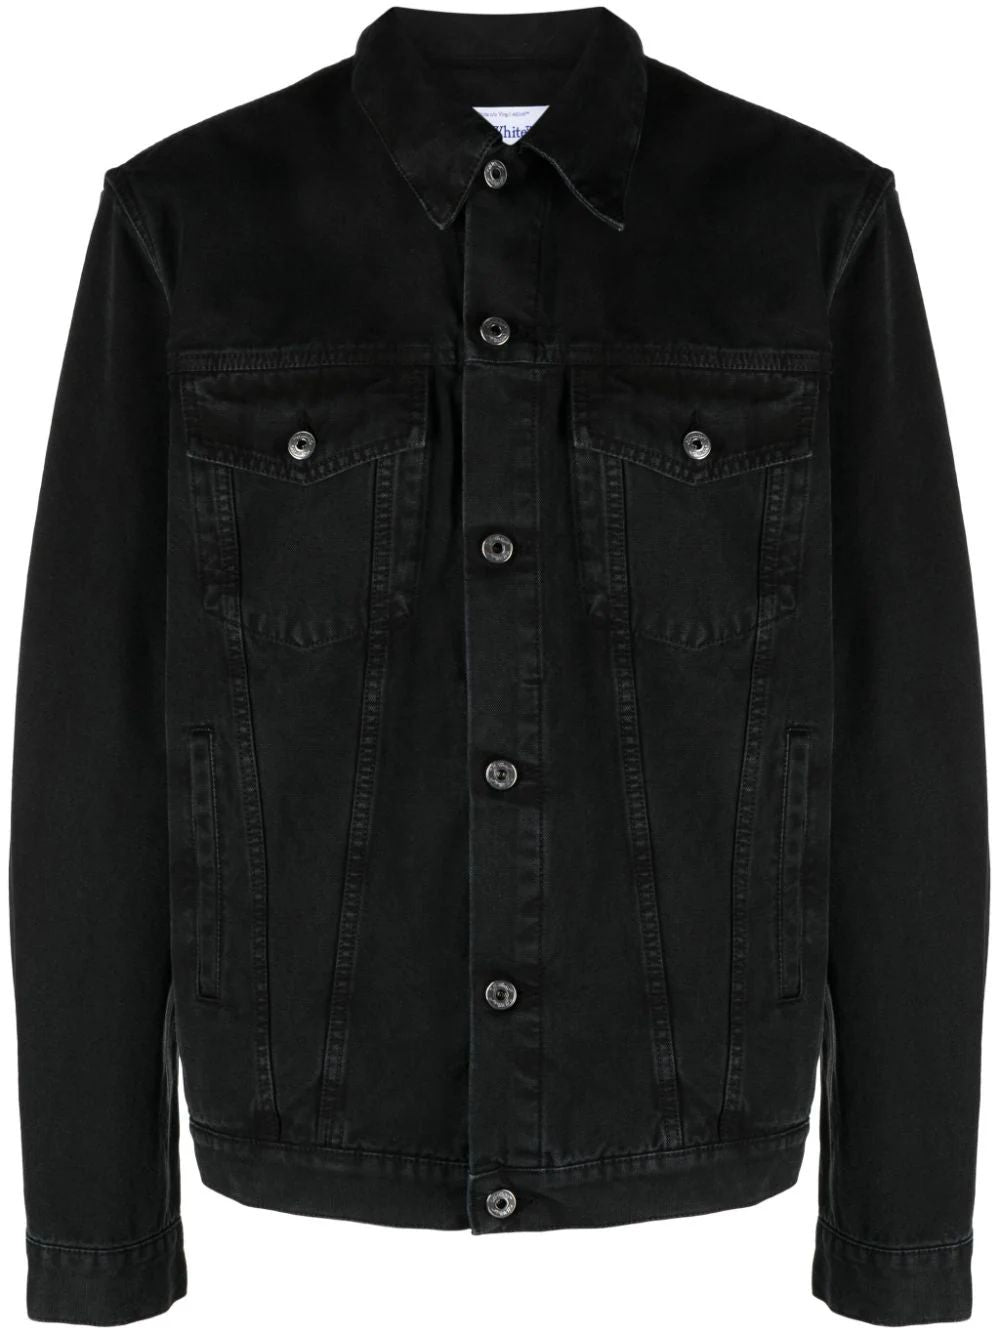 メンズ ブラックデニムジャケット - スタイリッシュな2つのフロントフラップポケット、バックロゴラベル - SS24コレクション